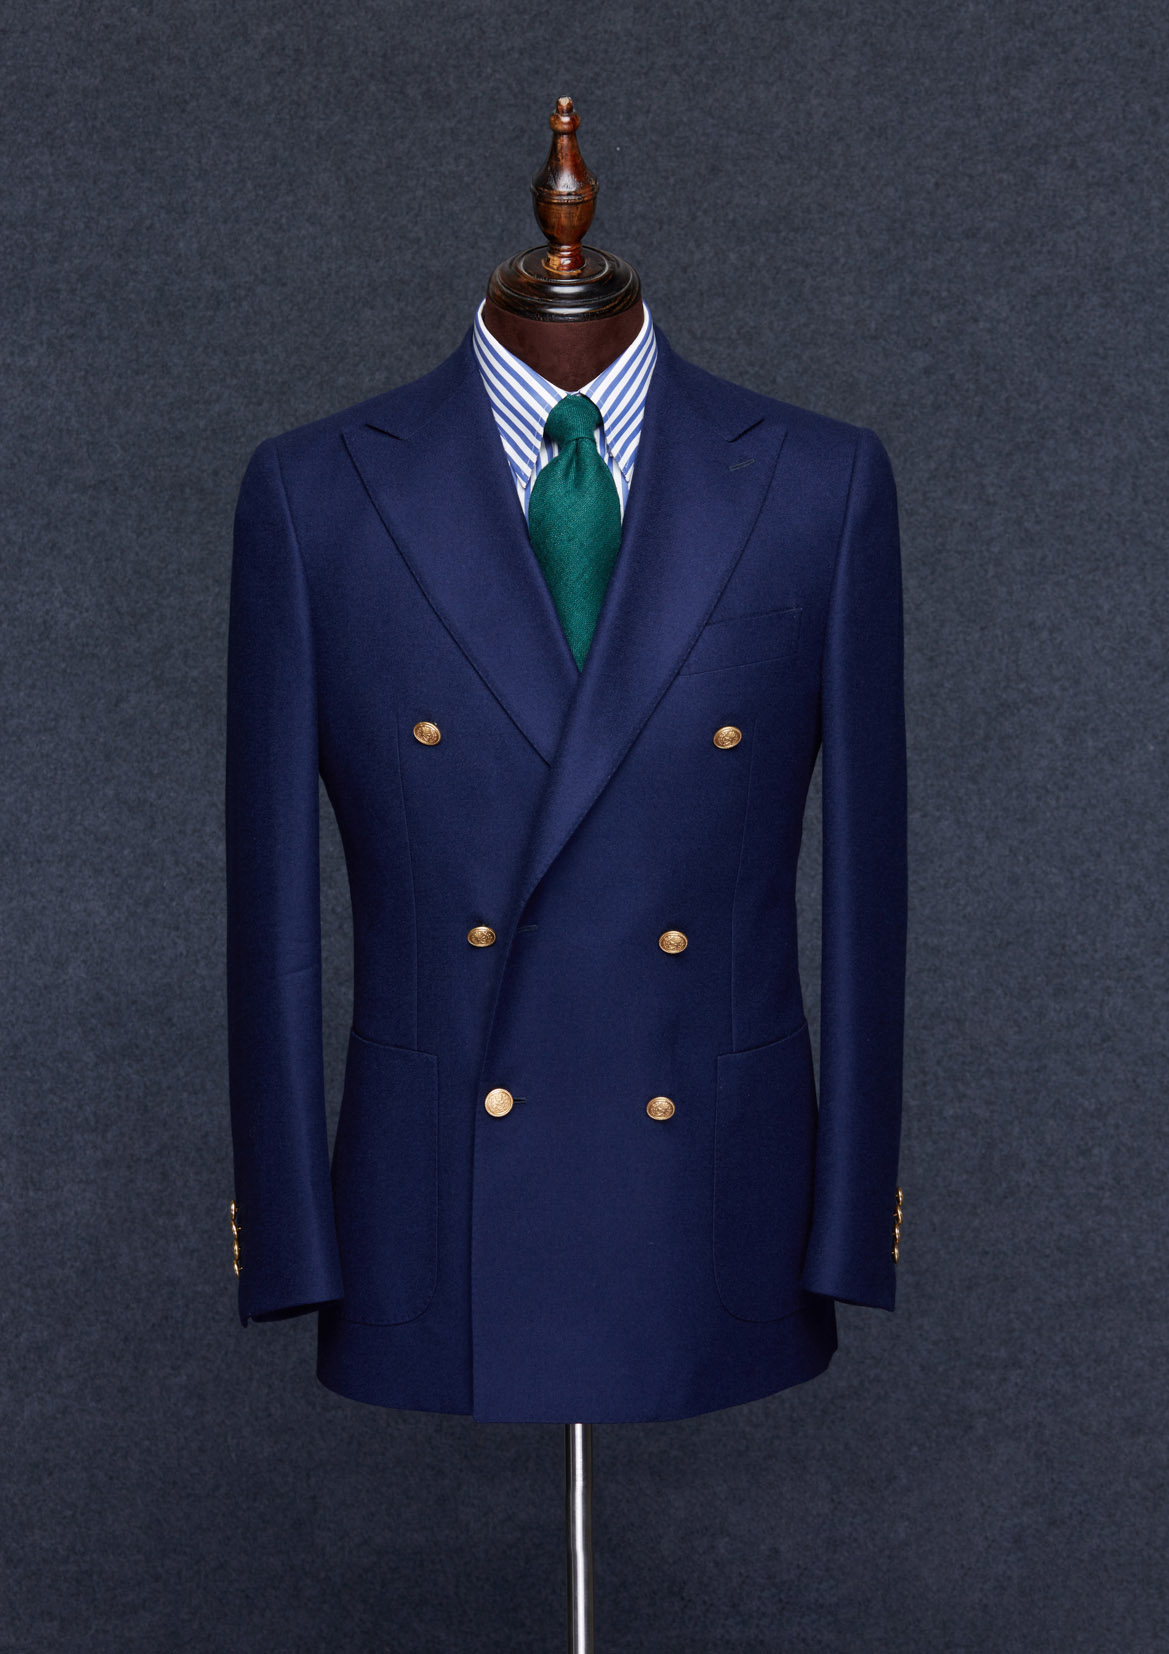 美式西服有哪些款式特征- 大连工作服定做 - 大连思戴尔服饰有限公司